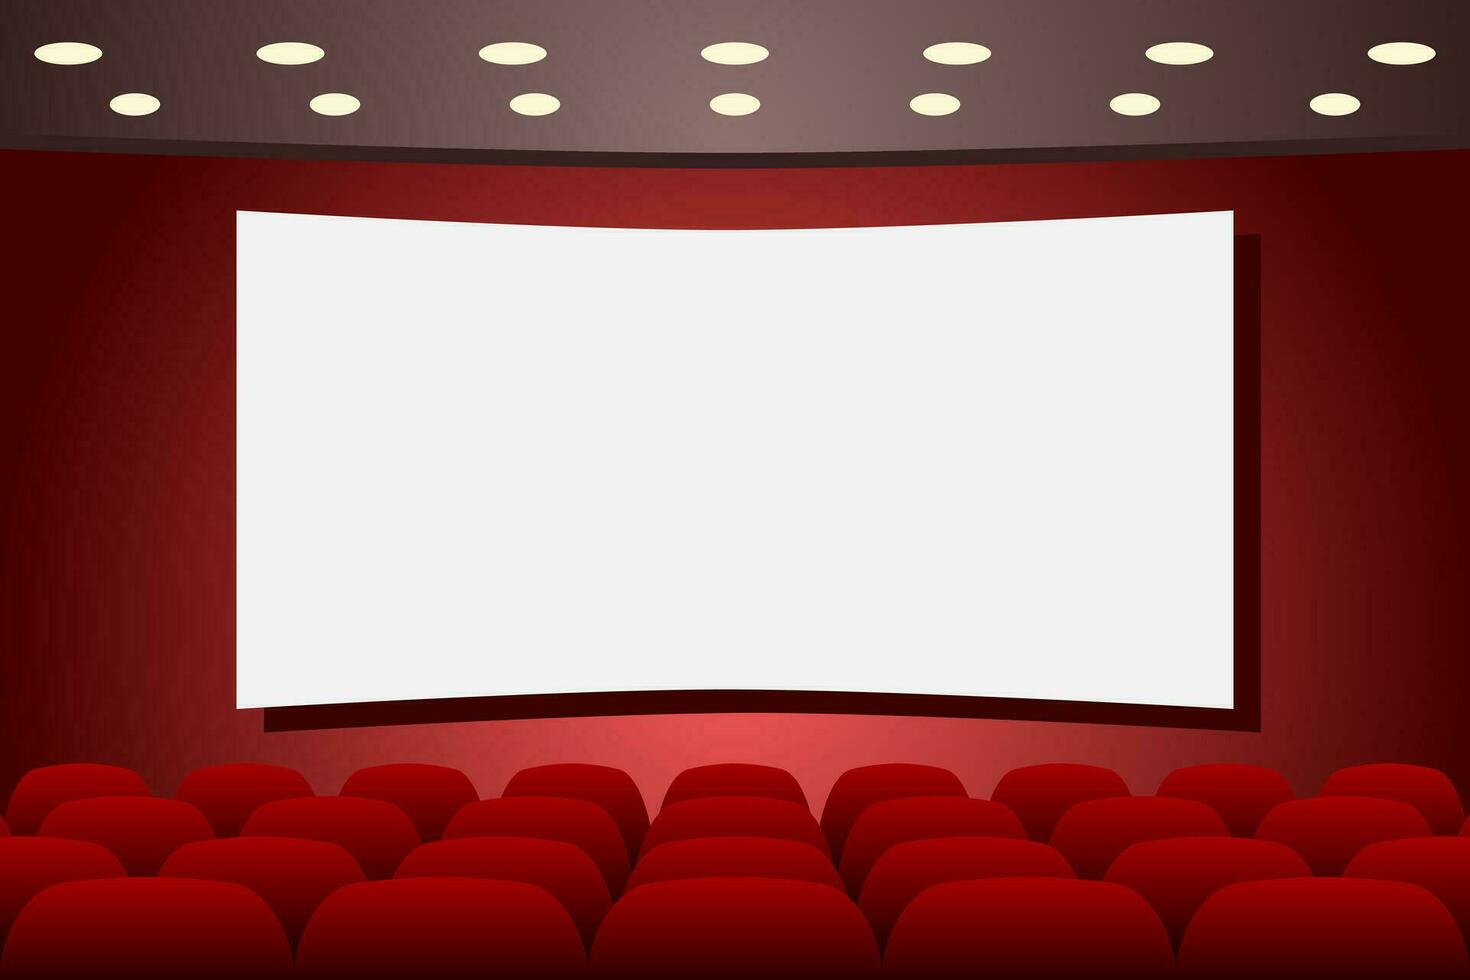 teatro etapa com esvaziar assentos linhas e em branco tela. teatro interior. cópia de espaço. vetor ilustração.